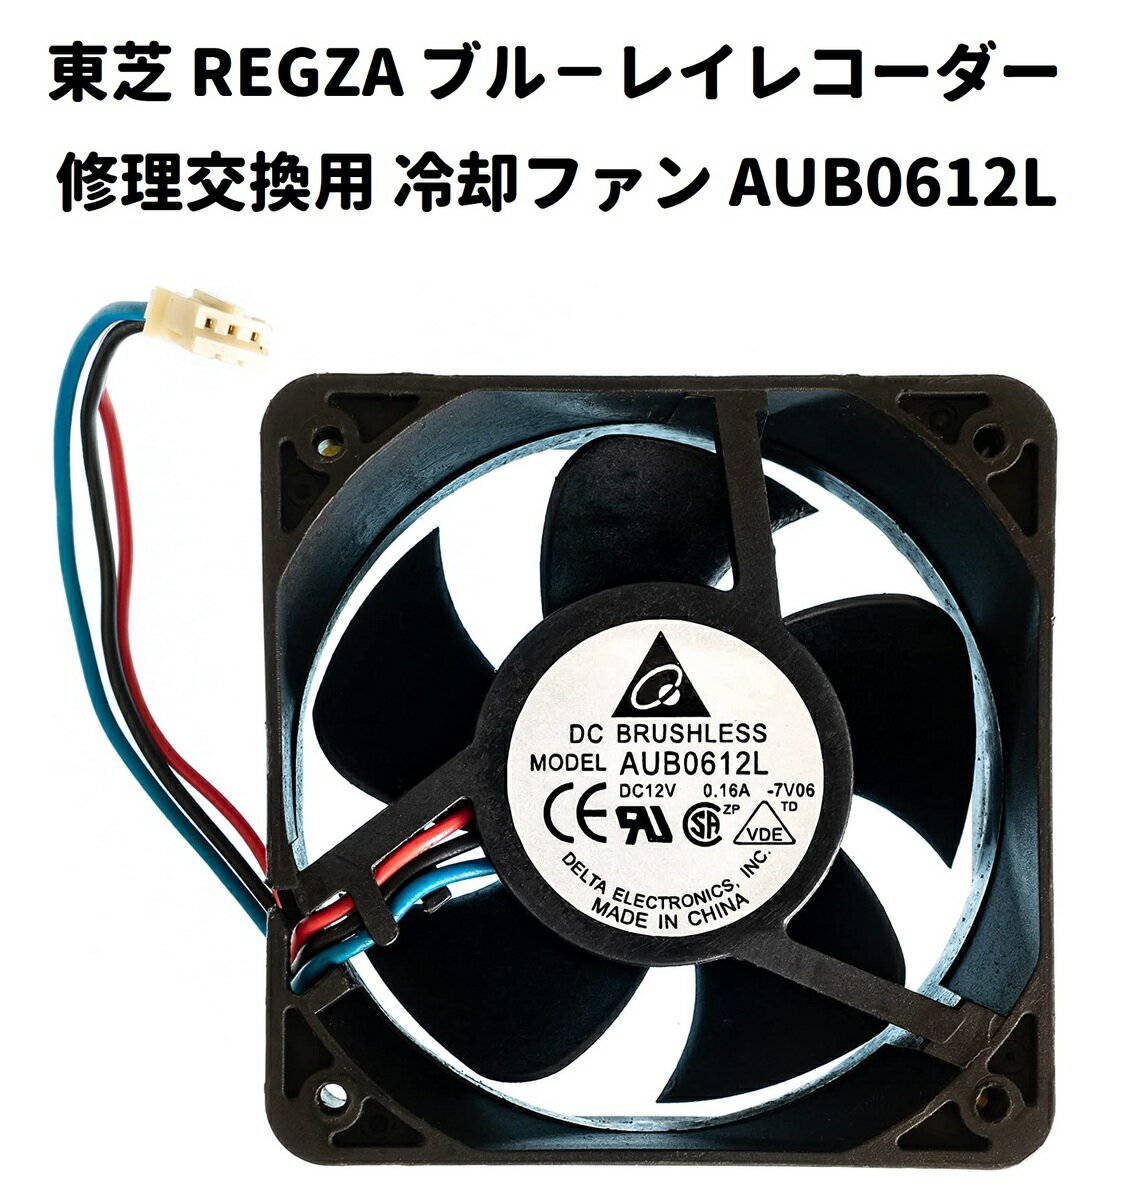 東芝 REGZA 互換 ブル－レイレコーダー 冷却 ファン AUB0612L DC12V 0.16A 3ピン 交換 部品 修理